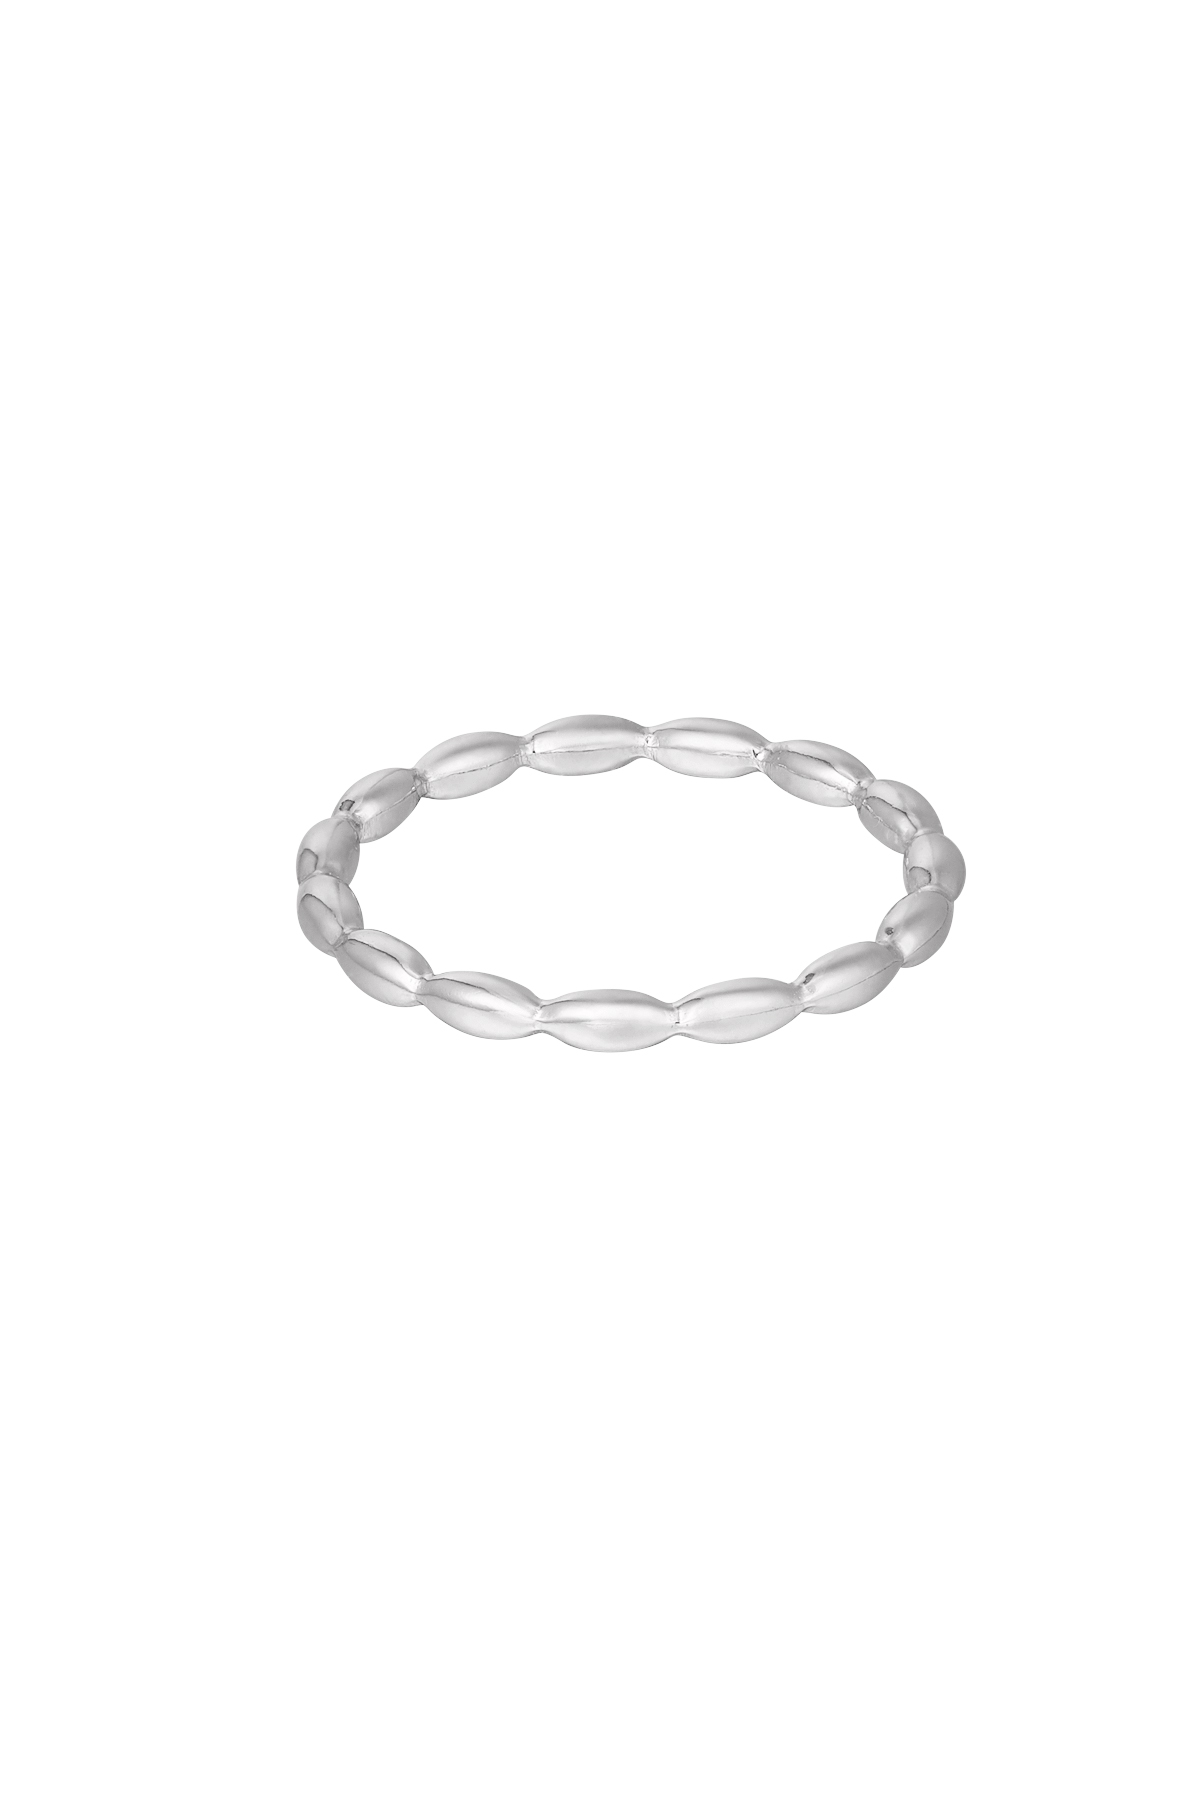 Ring verbundene Ovale - Silber 